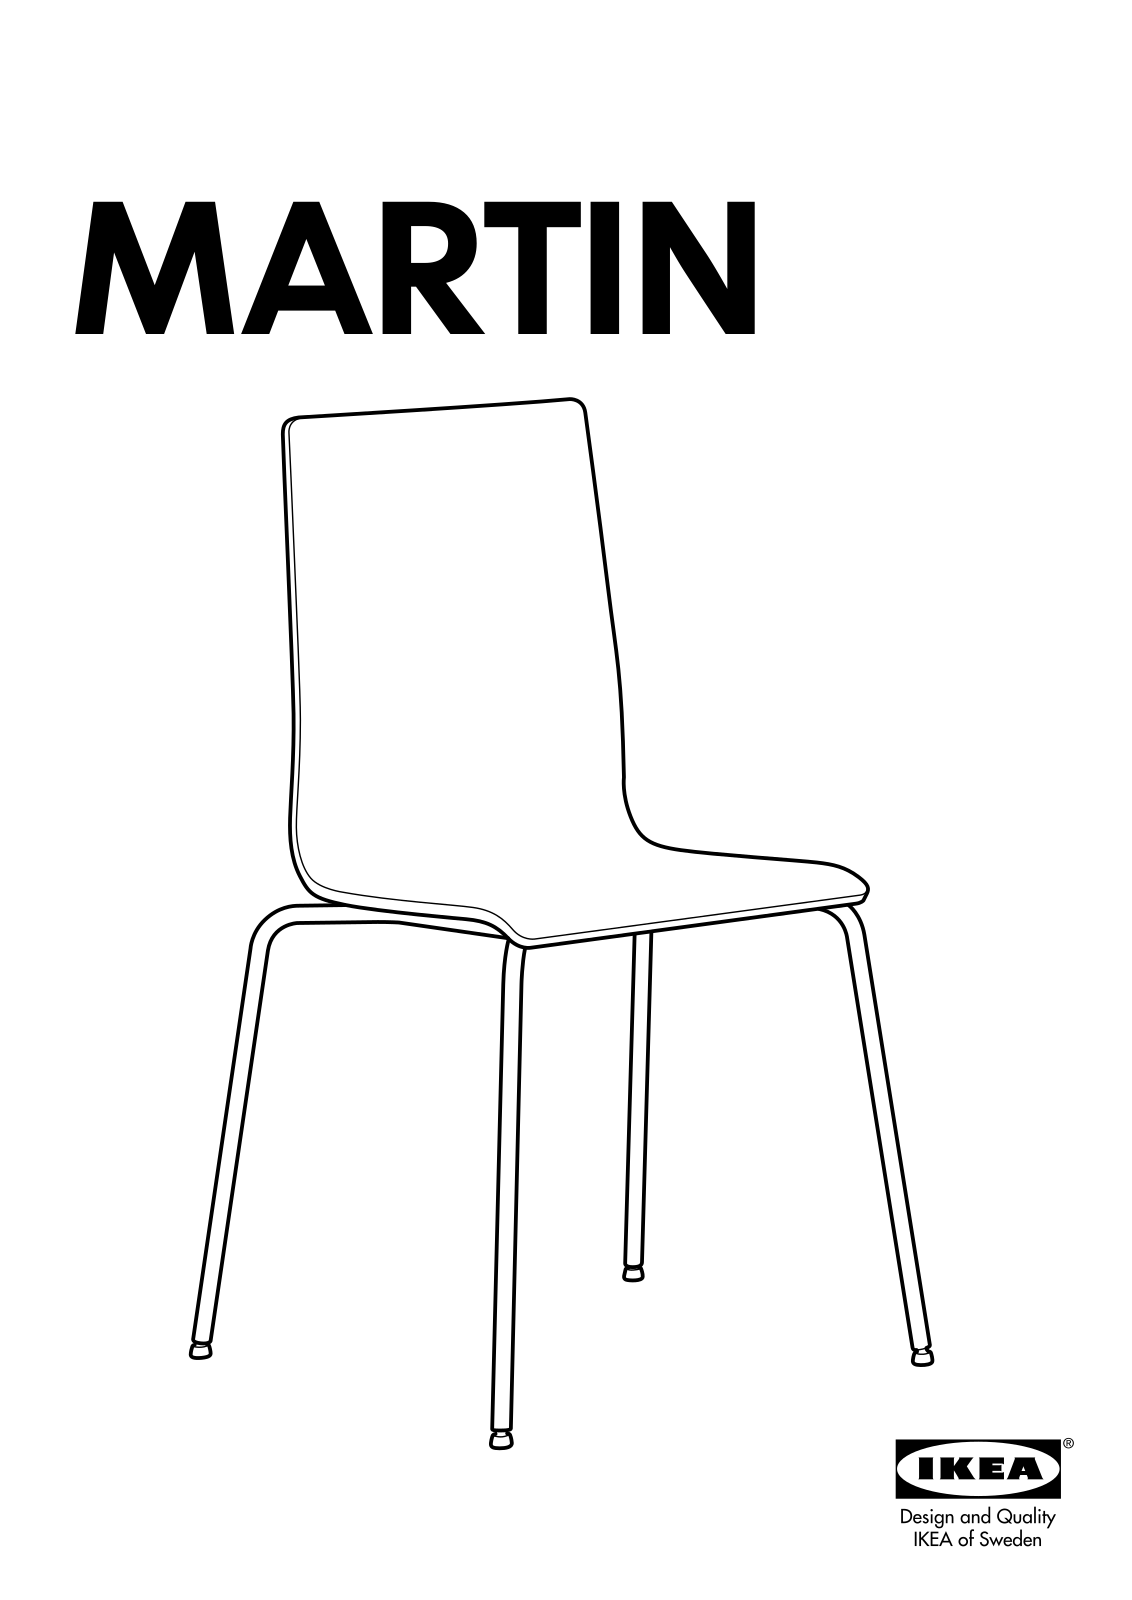 IKEA MARTIN User Manual